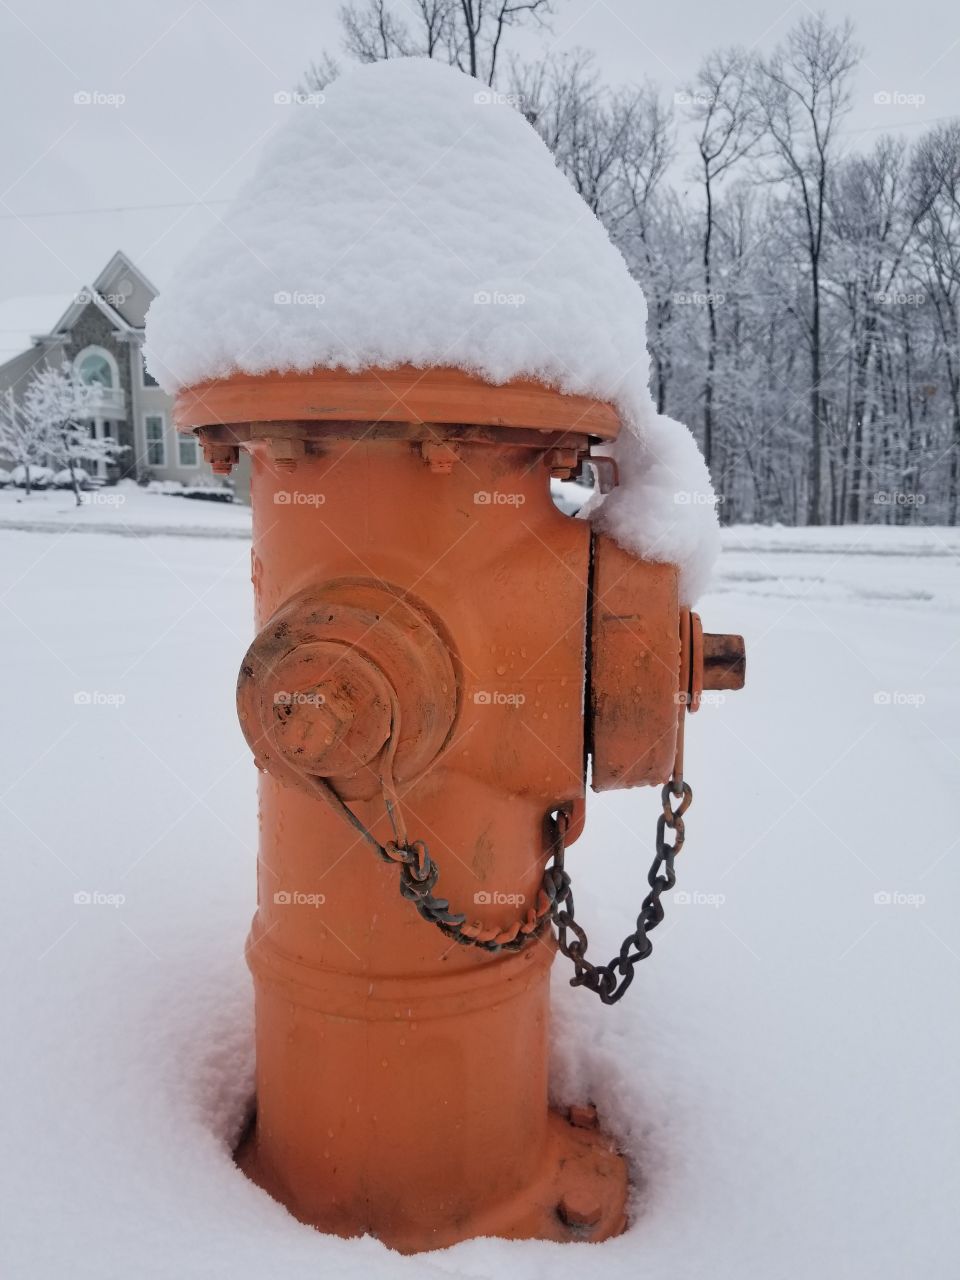 Frozen Fire Hydrant